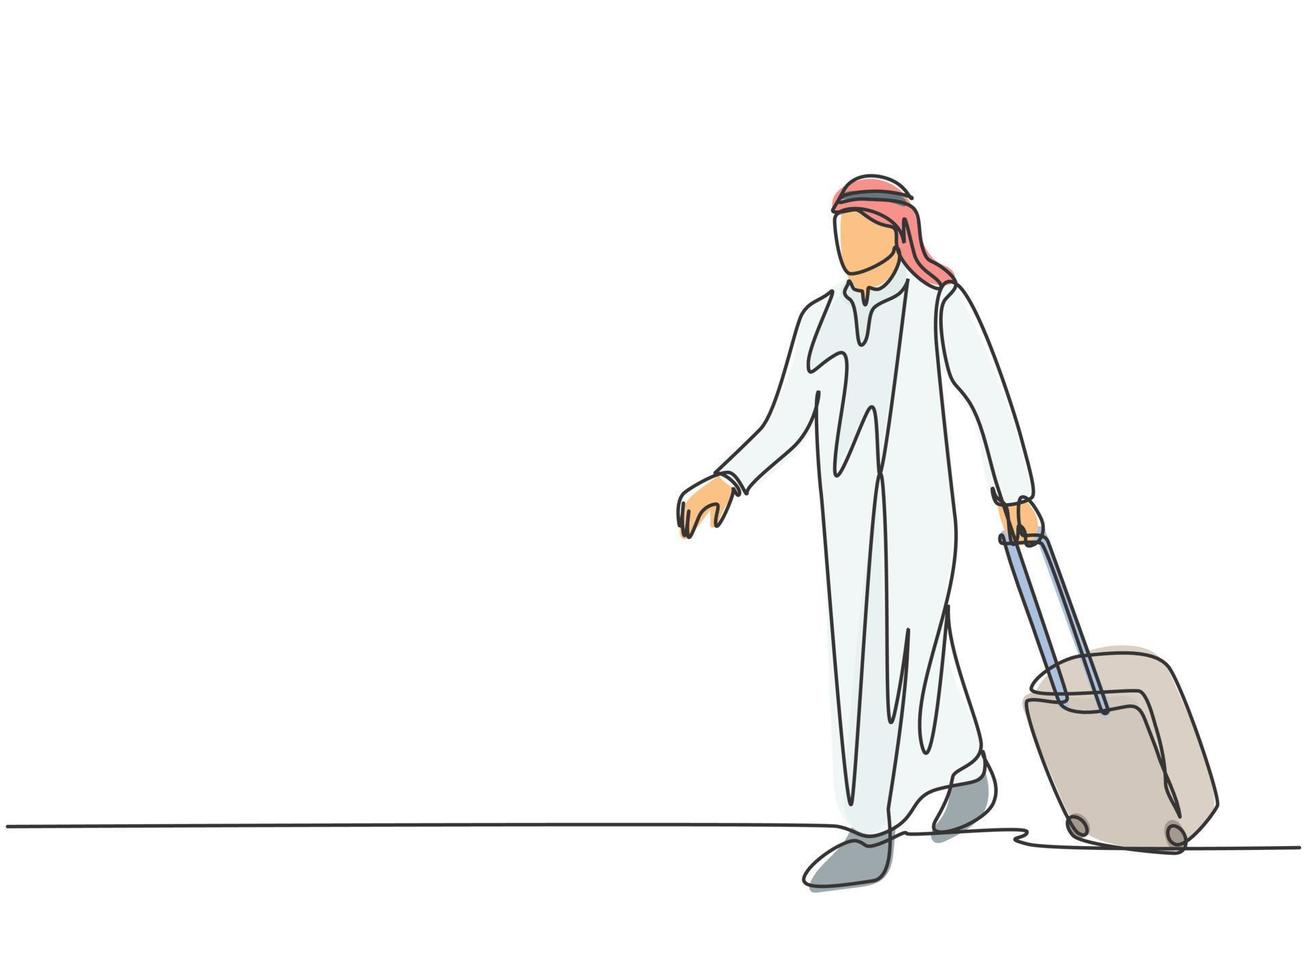 un unico disegno a tratteggio di un giovane uomo d'affari musulmano maschio felice che porta una valigia fuori dall'aeroporto. shmag di stoffa dell'arabia saudita, kandora, foulard, thobe. illustrazione vettoriale di disegno di disegno di linea continua